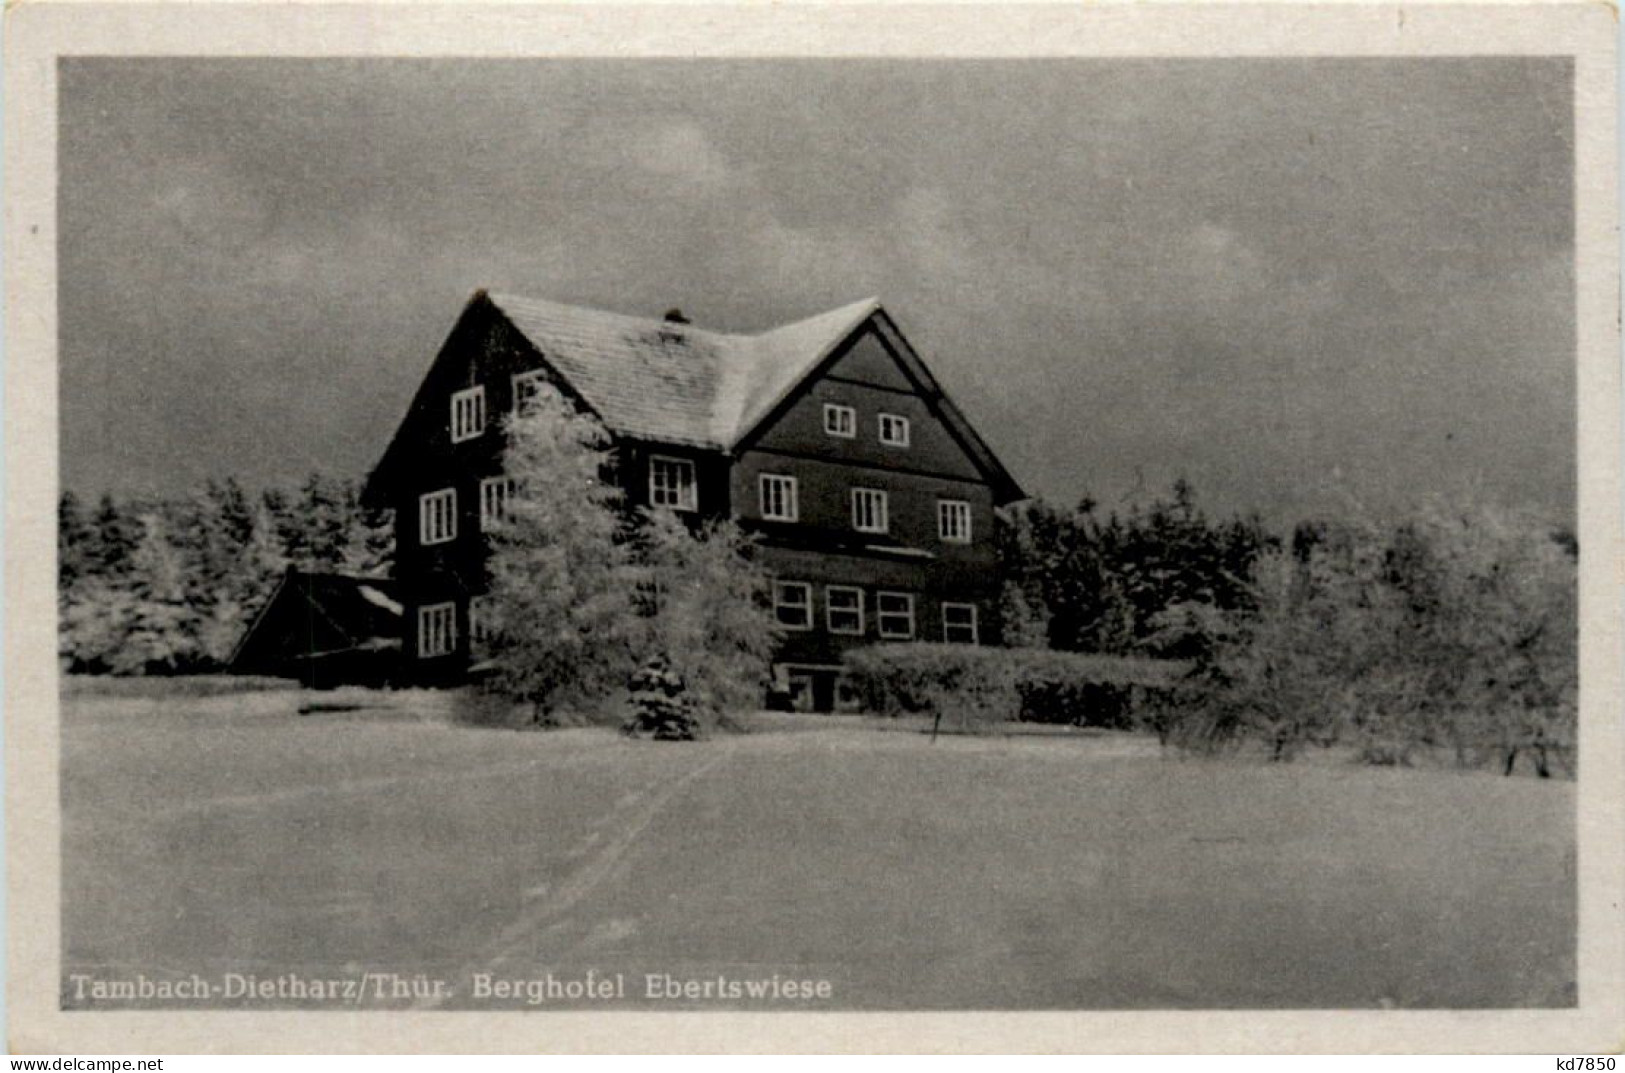 Tambach-Dietharz, Berghotel Ebertswiese - Tambach-Dietharz